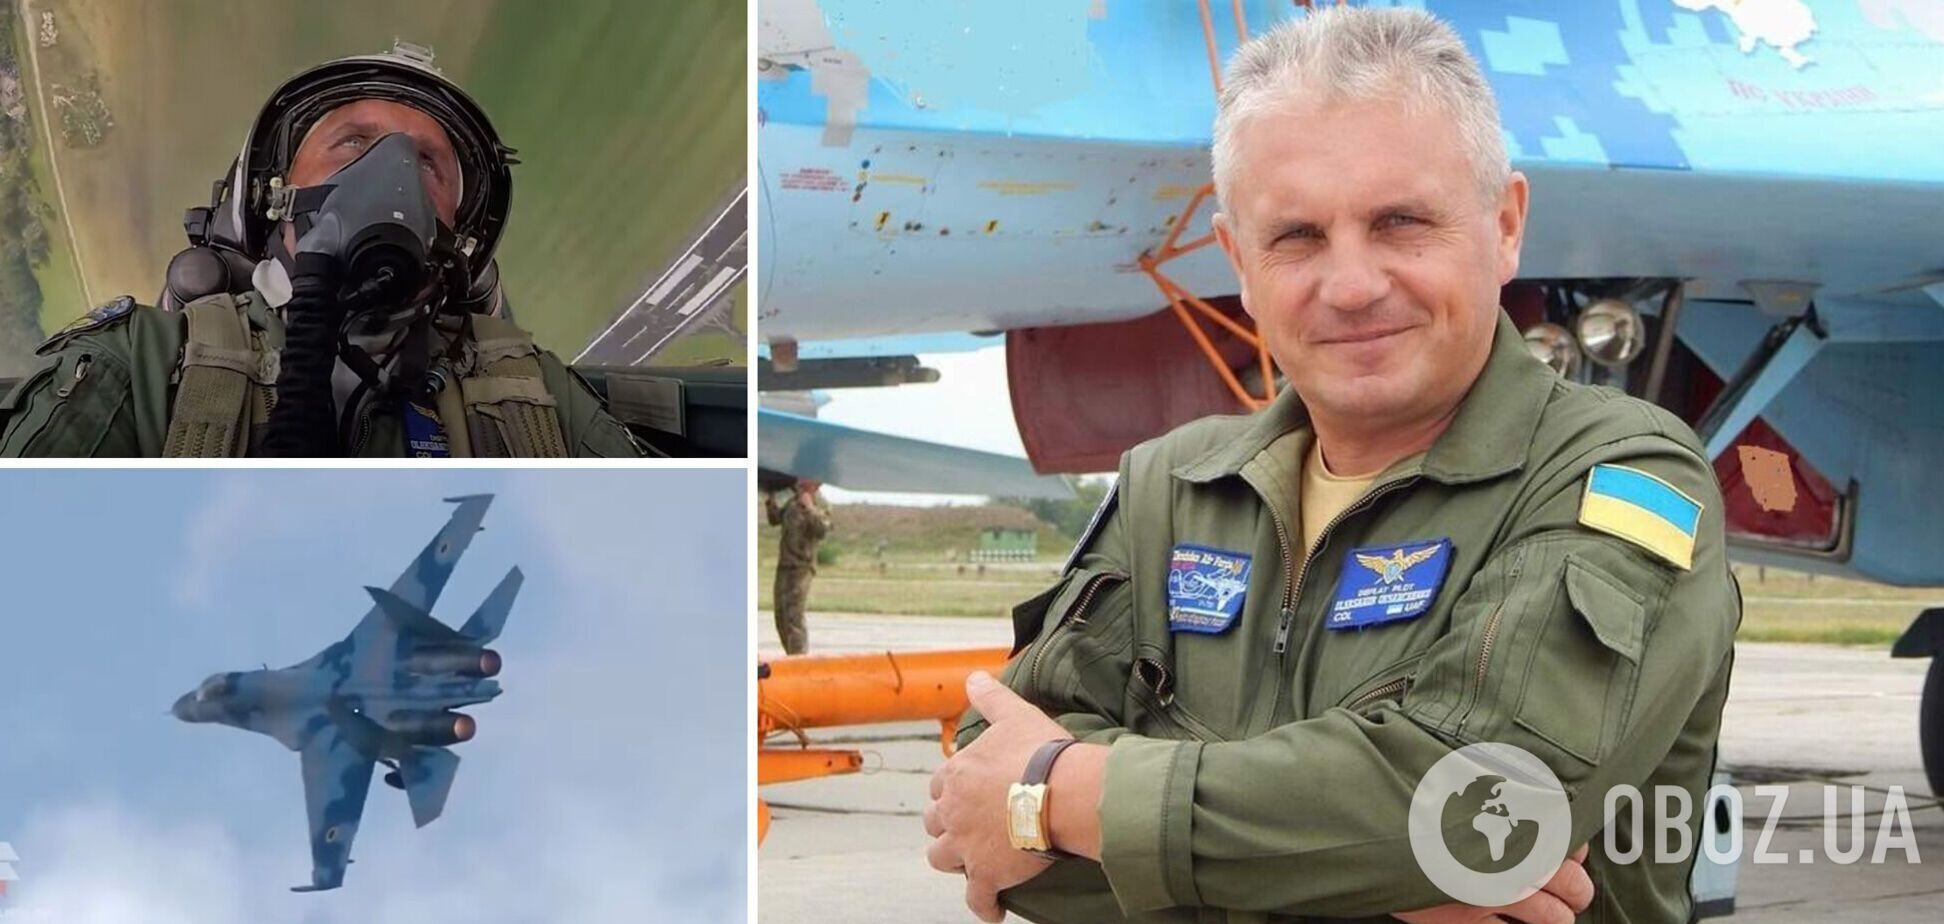 Погиб в бою, отвлекая вражескую авиацию: поляки создали видео об украинском асе, Герое Украины Александре Оксанченко